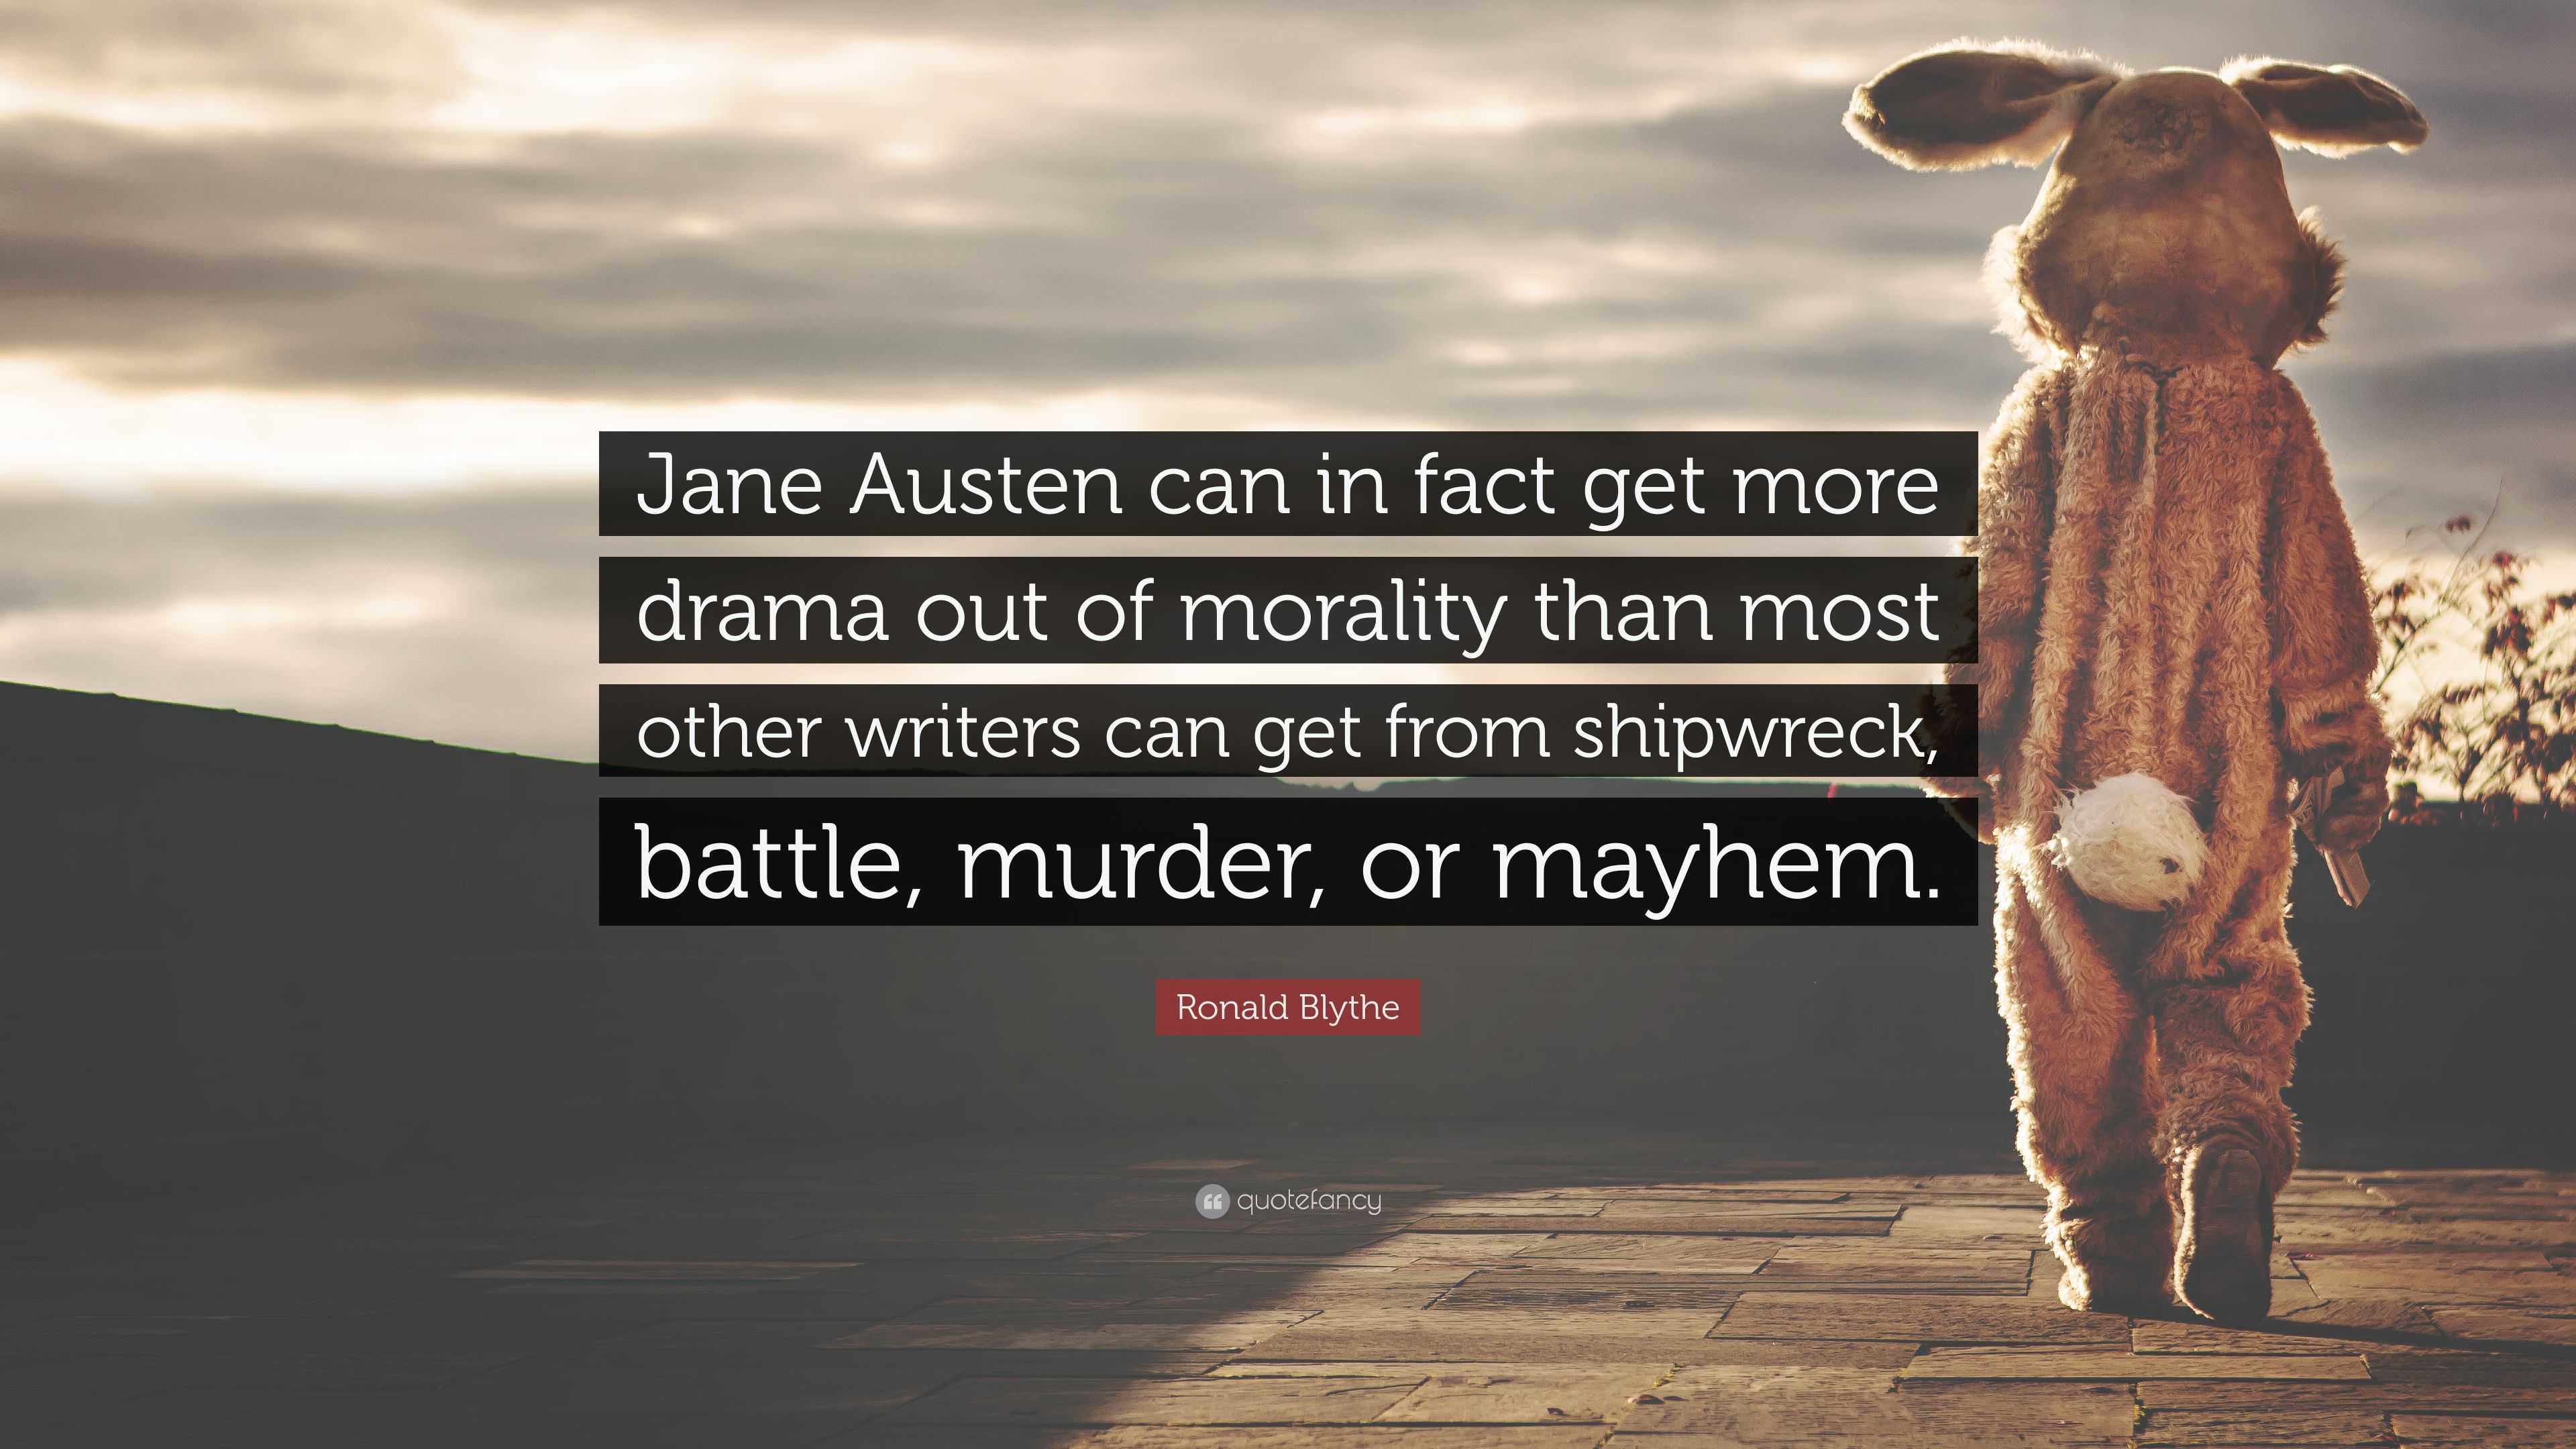 The battle for Jane Austen